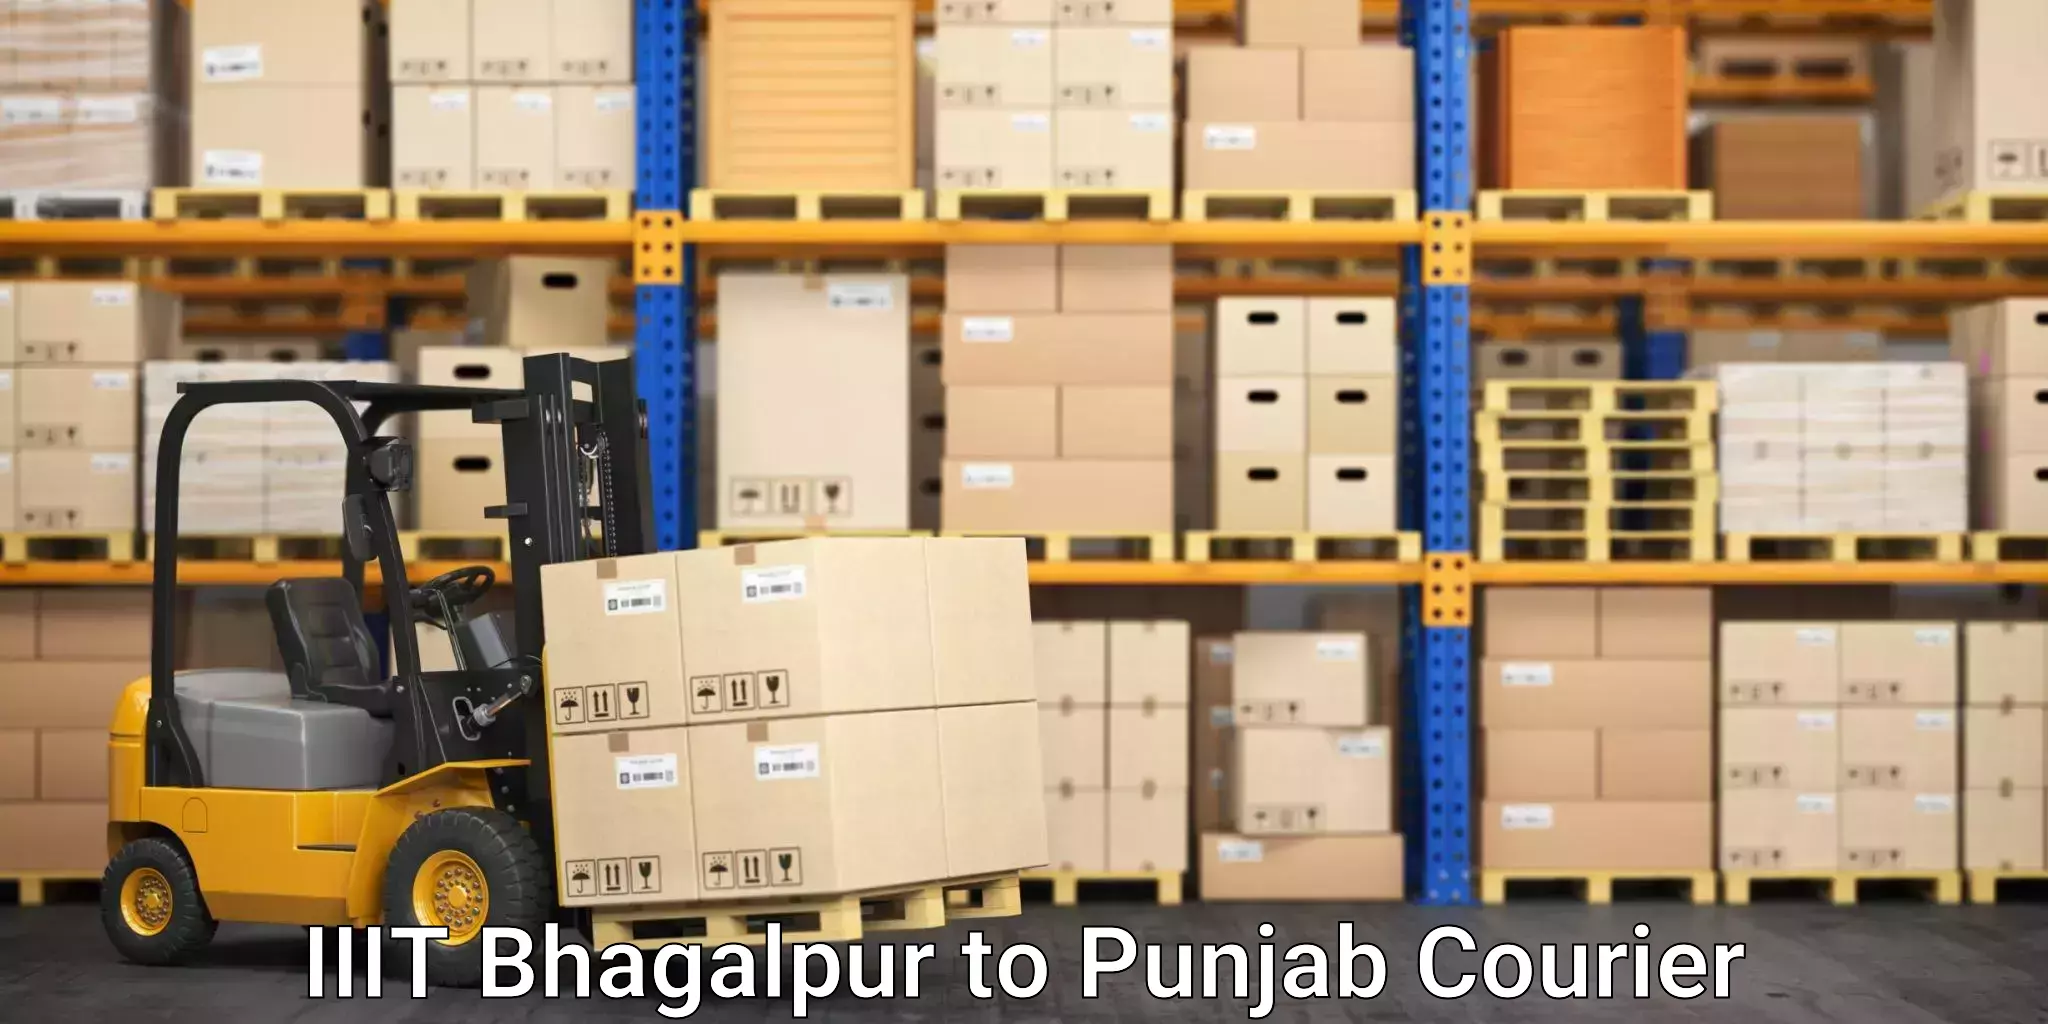 Professional moving strategies IIIT Bhagalpur to Punjab